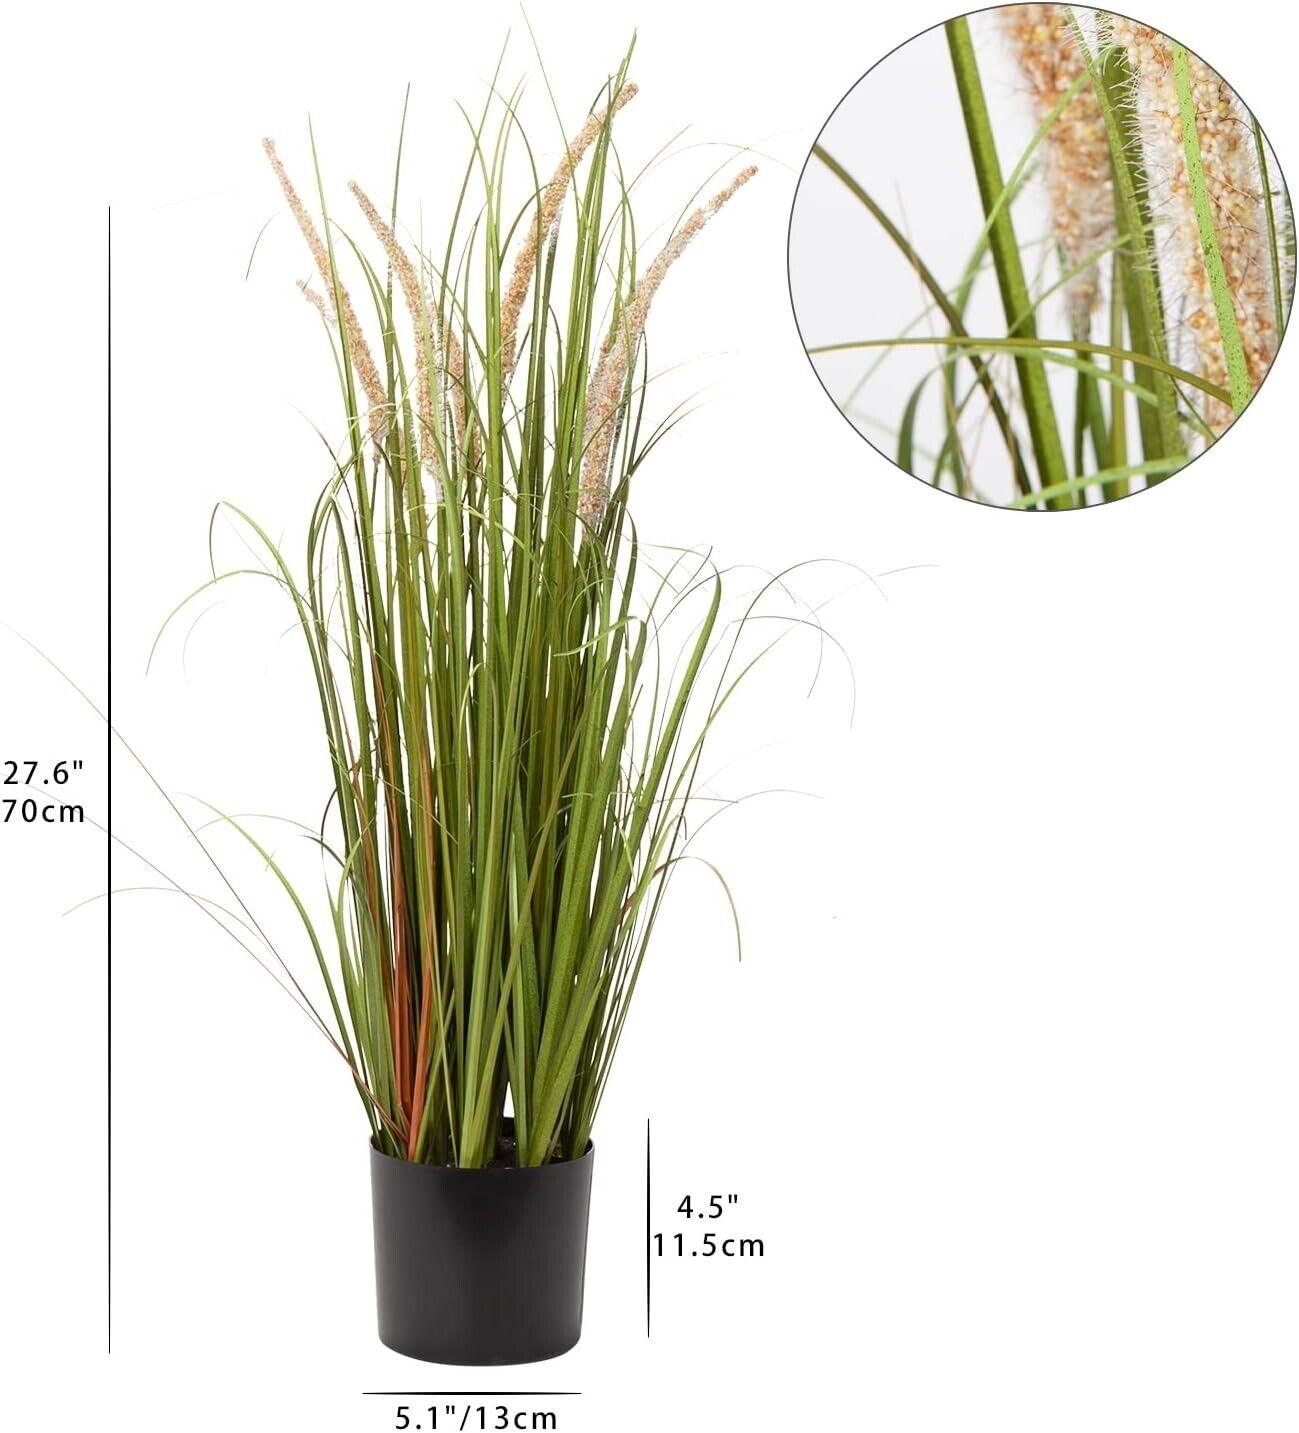 Hollyone 70CM Artificial Plant White Foxtail Pampas Grass, Plastic Plants Grass - Massive Discounts